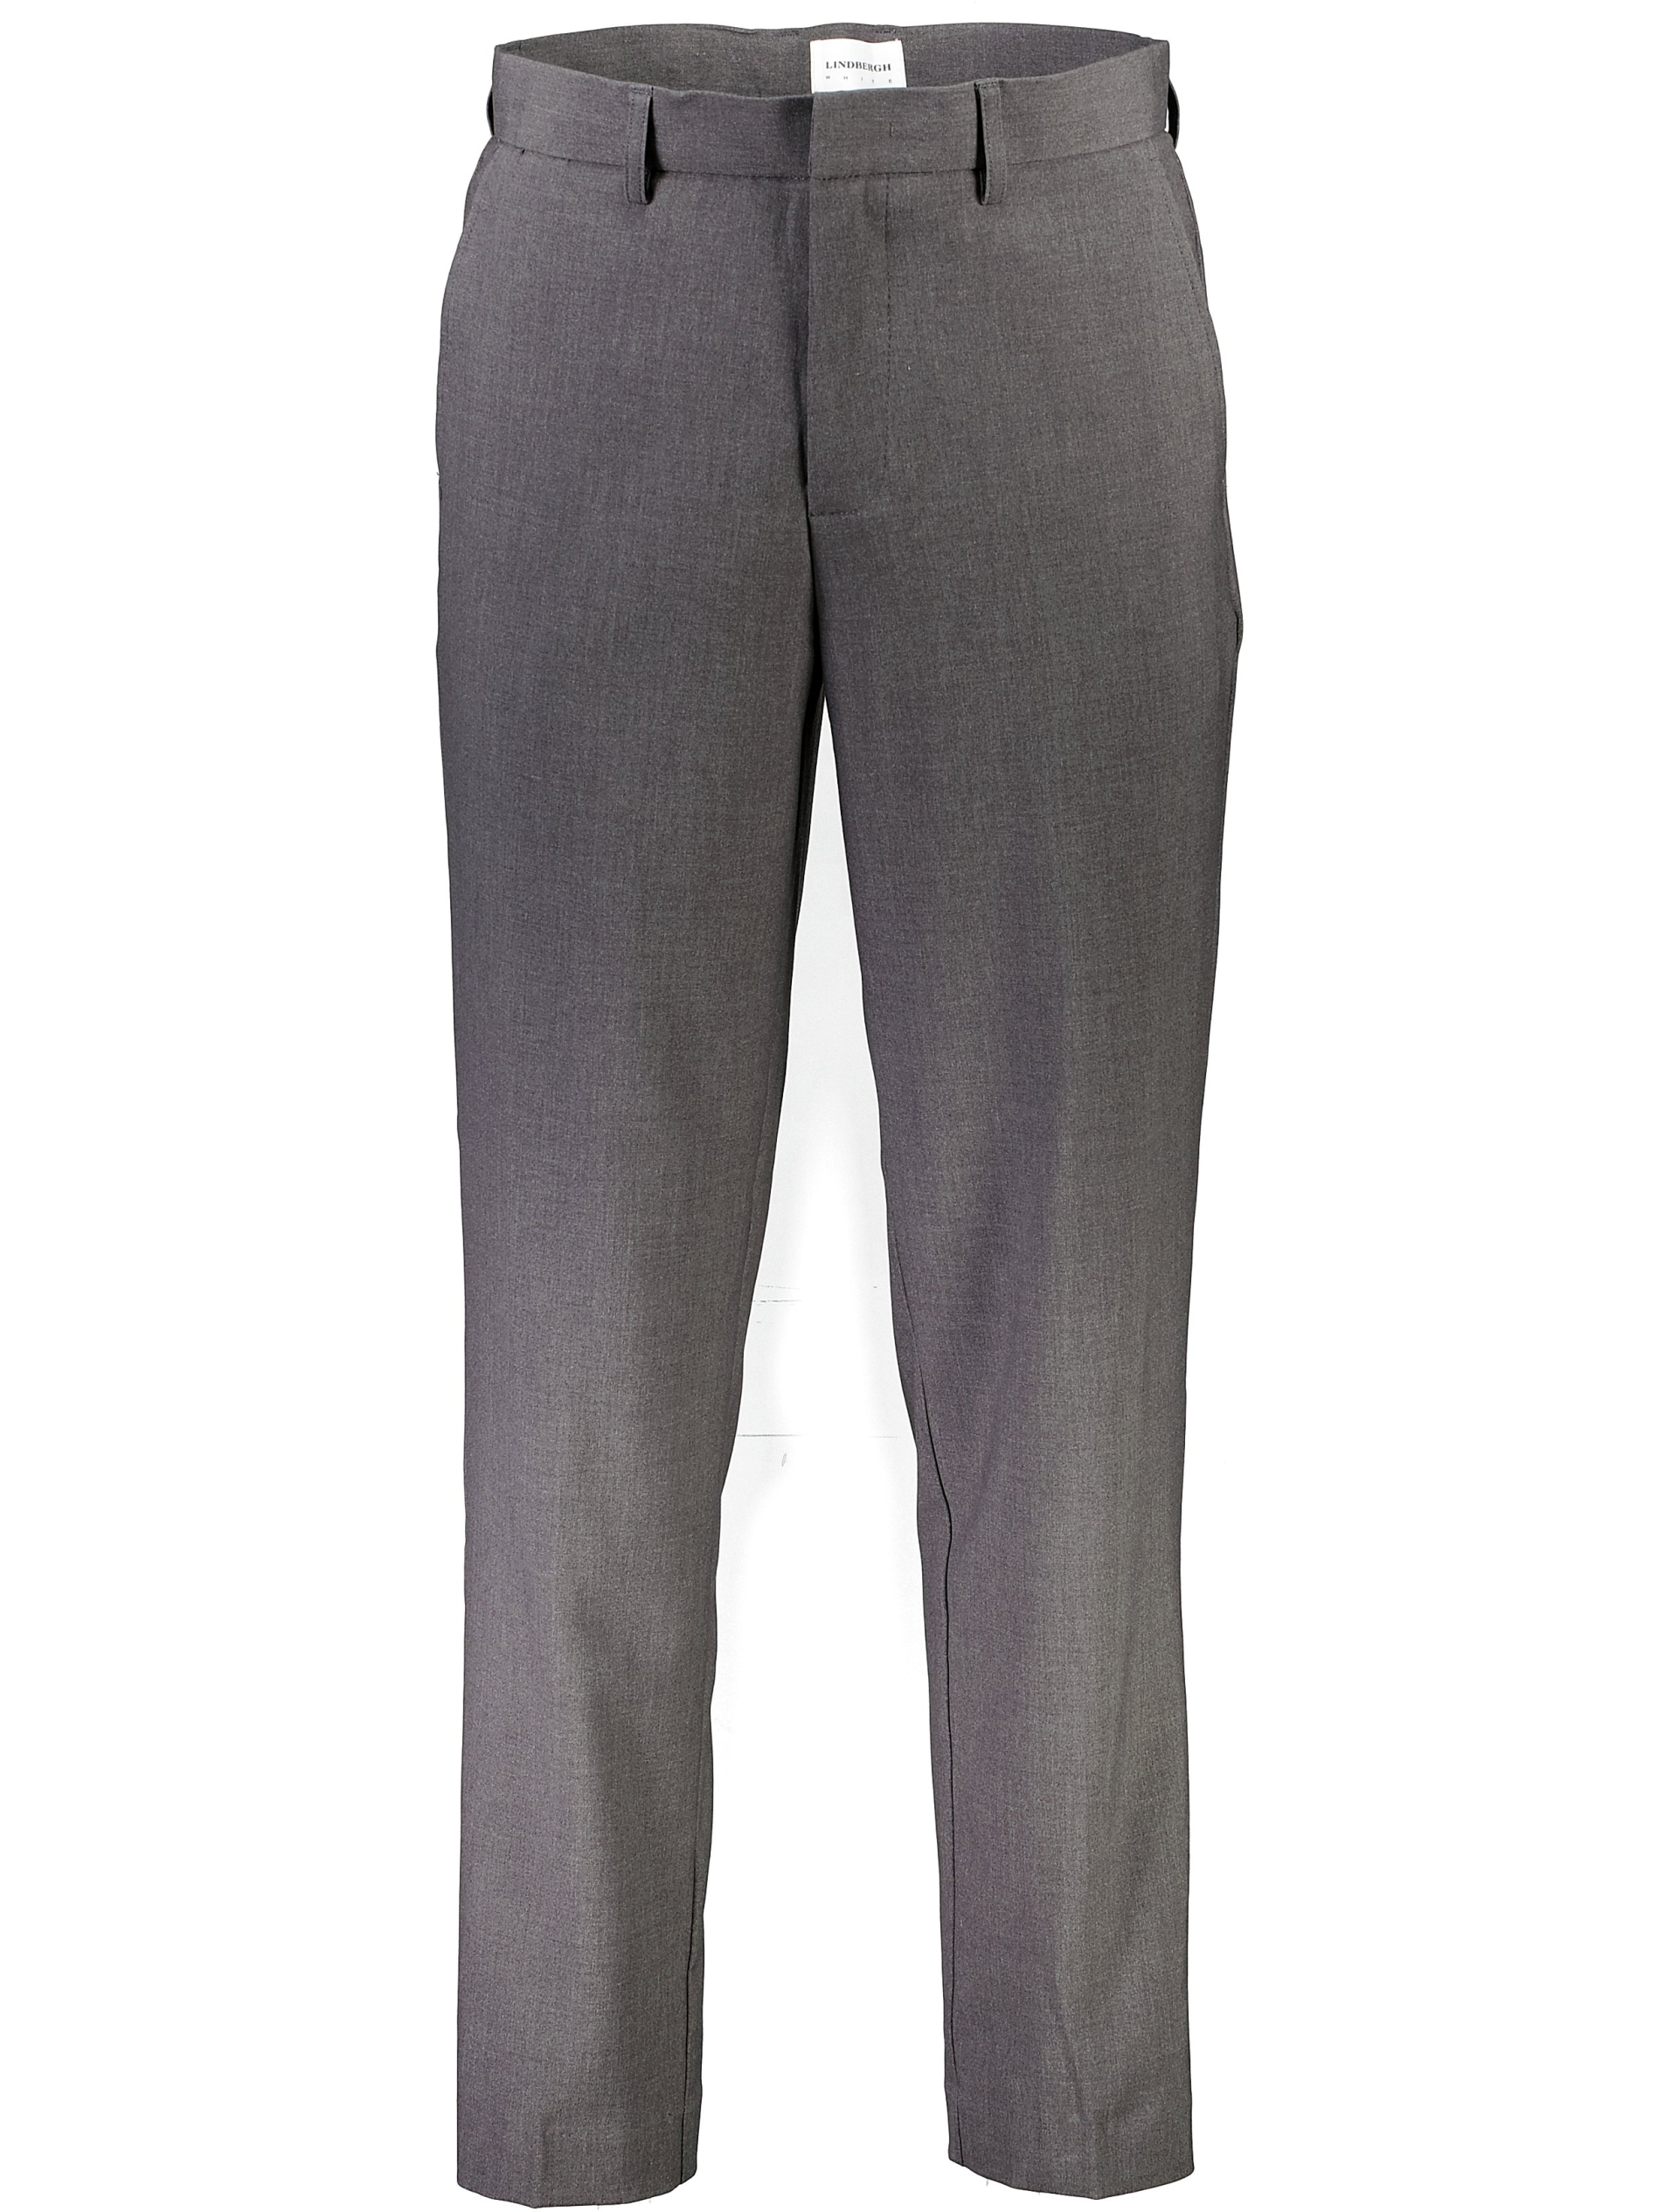 Lindbergh Klassiske bukser grå / grey mix